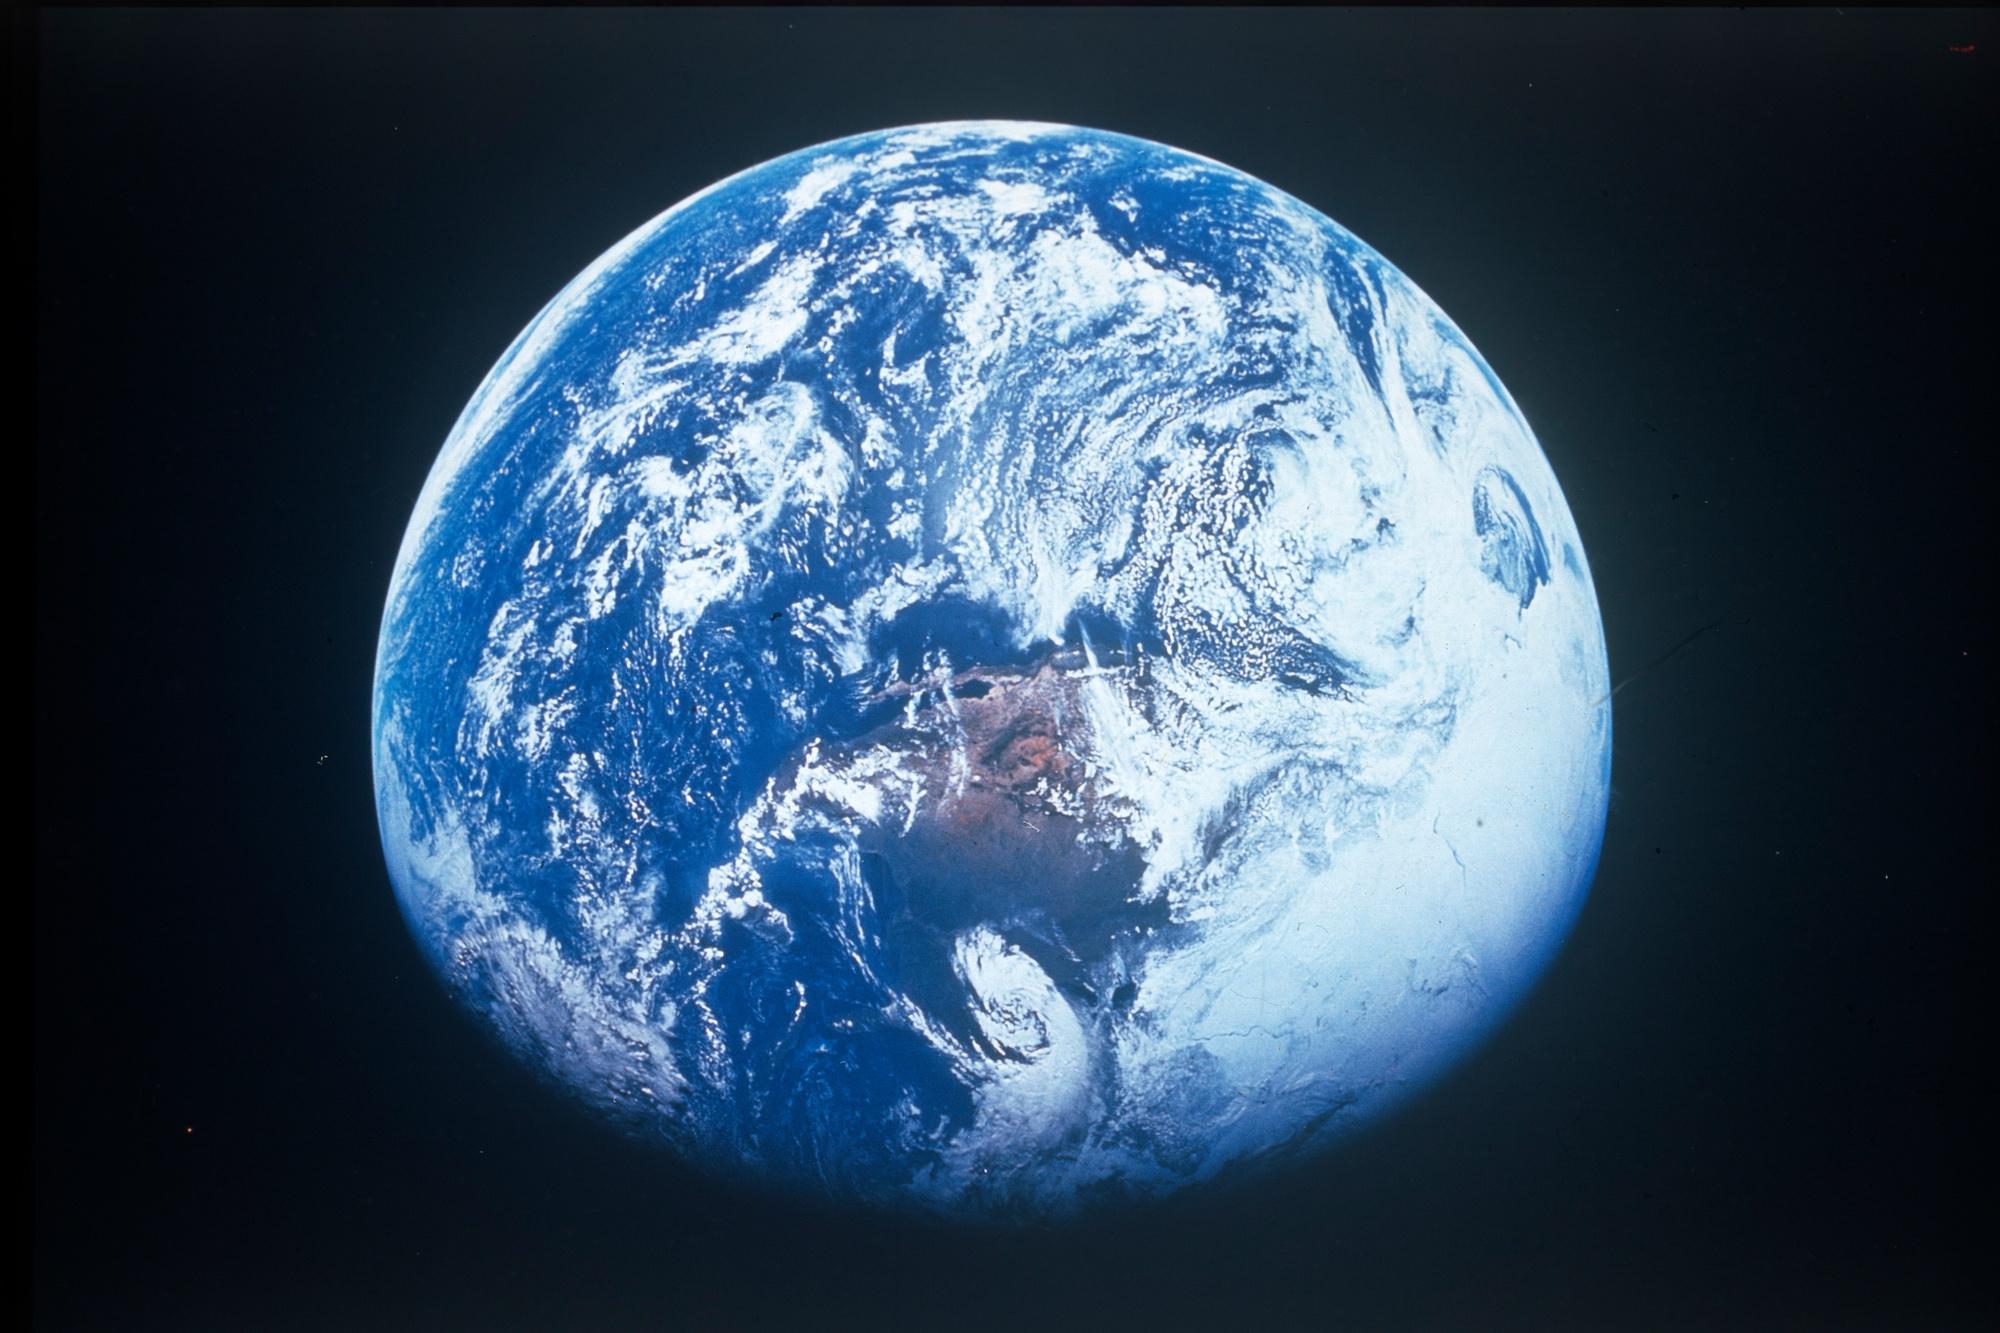 La Terre d'Apollo 16, avril 1972. (NASA)